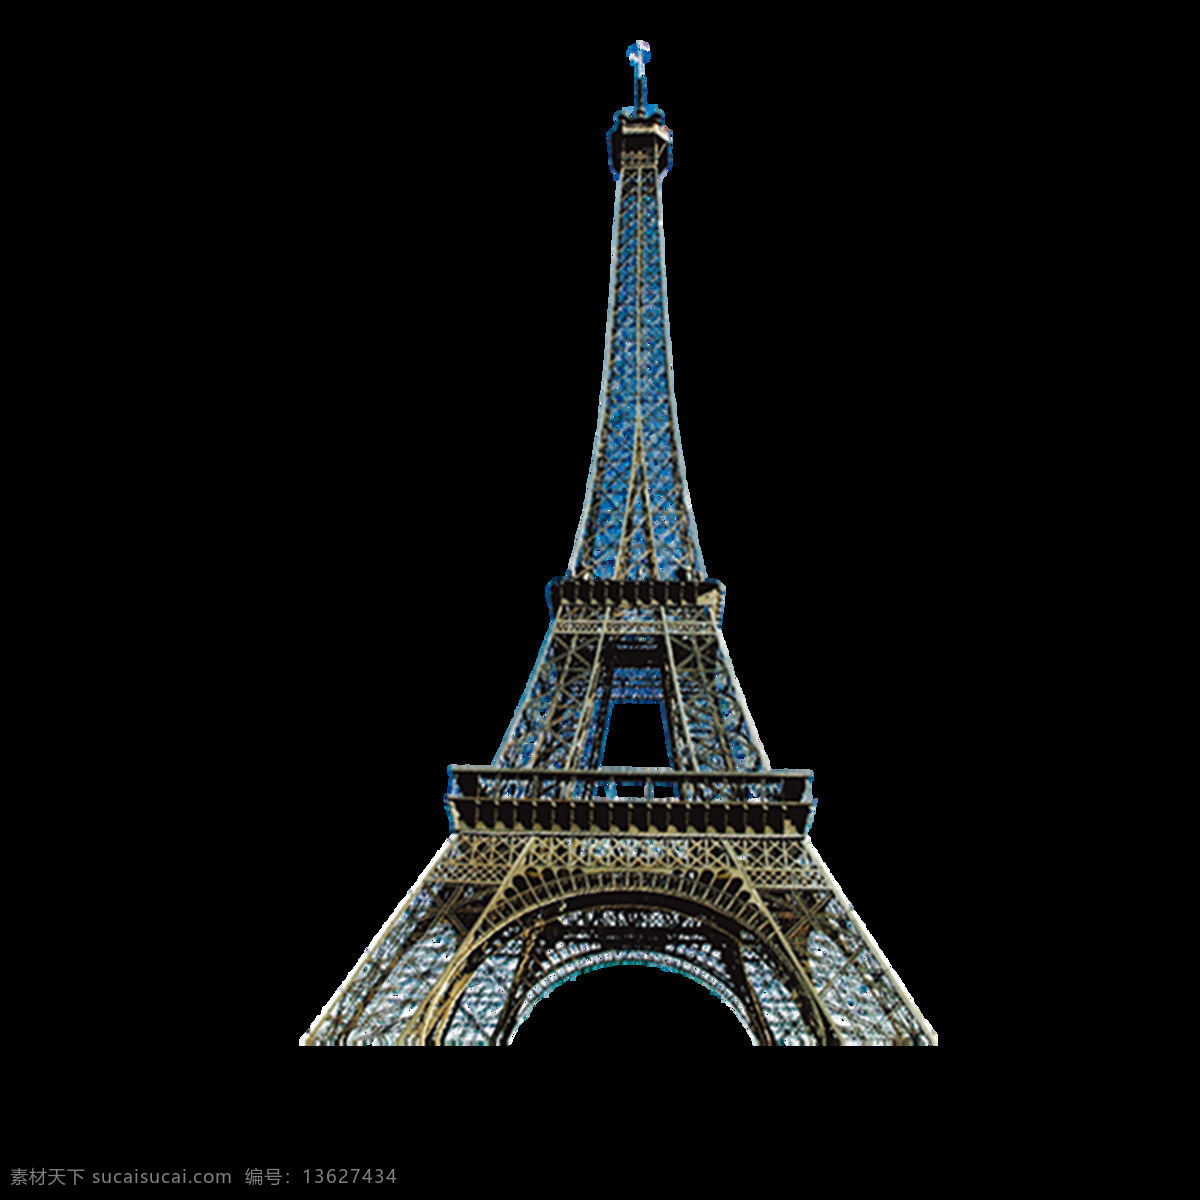 法国 巴黎埃菲尔铁塔 元素 城市建筑 铁塔 法国建筑 埃菲尔铁塔